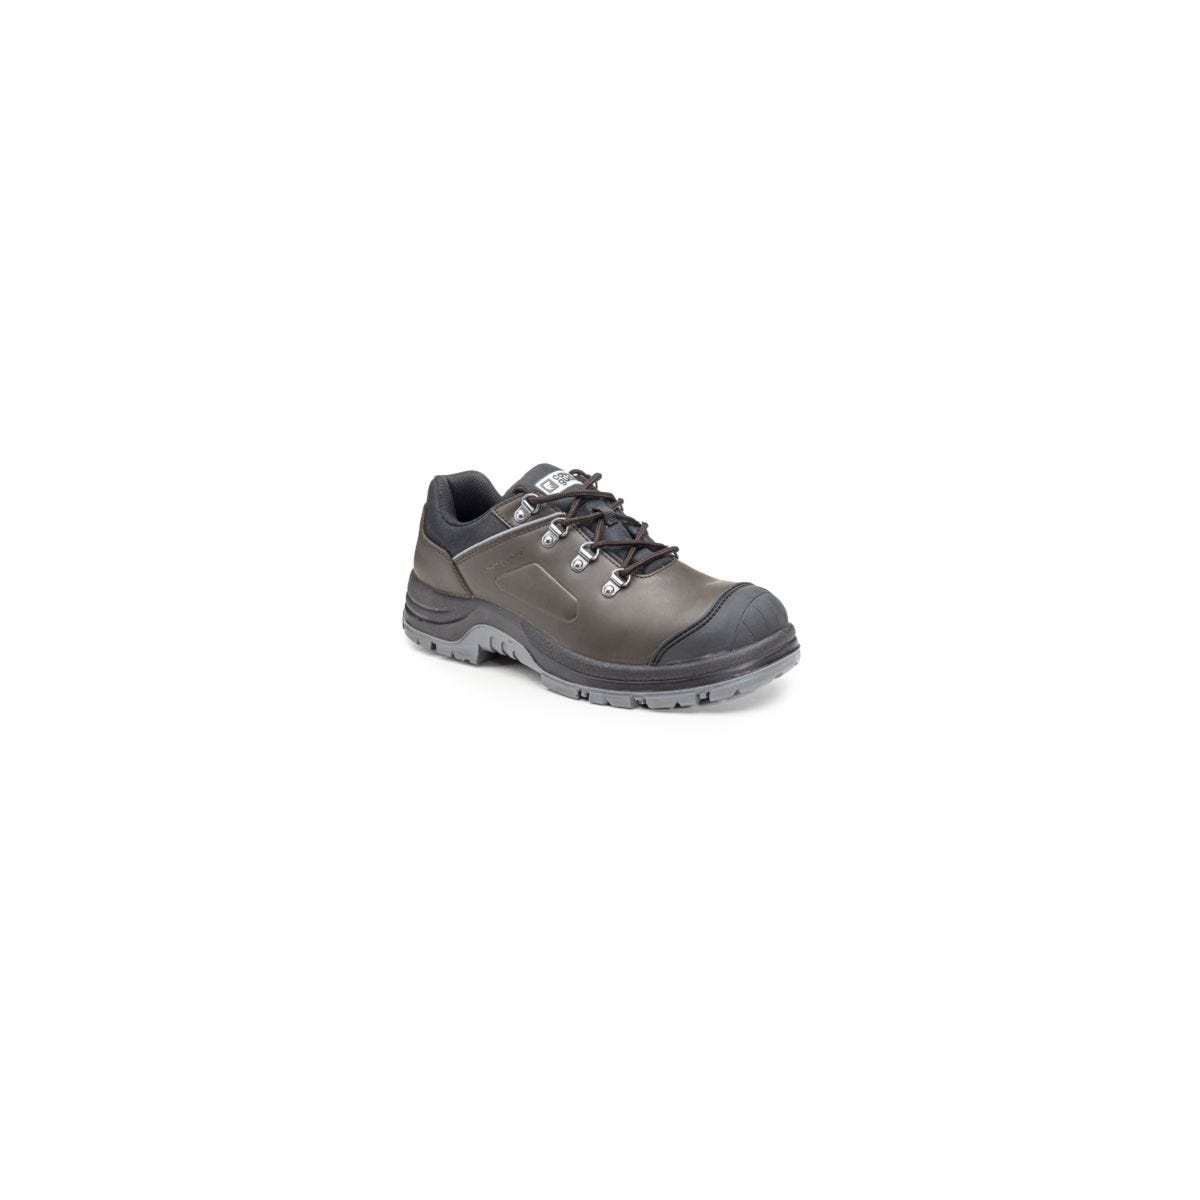 Chaussures de sécurité S3 FLINT Basse Croute de cuir Marron - COVERGUARD - Taille 41 0